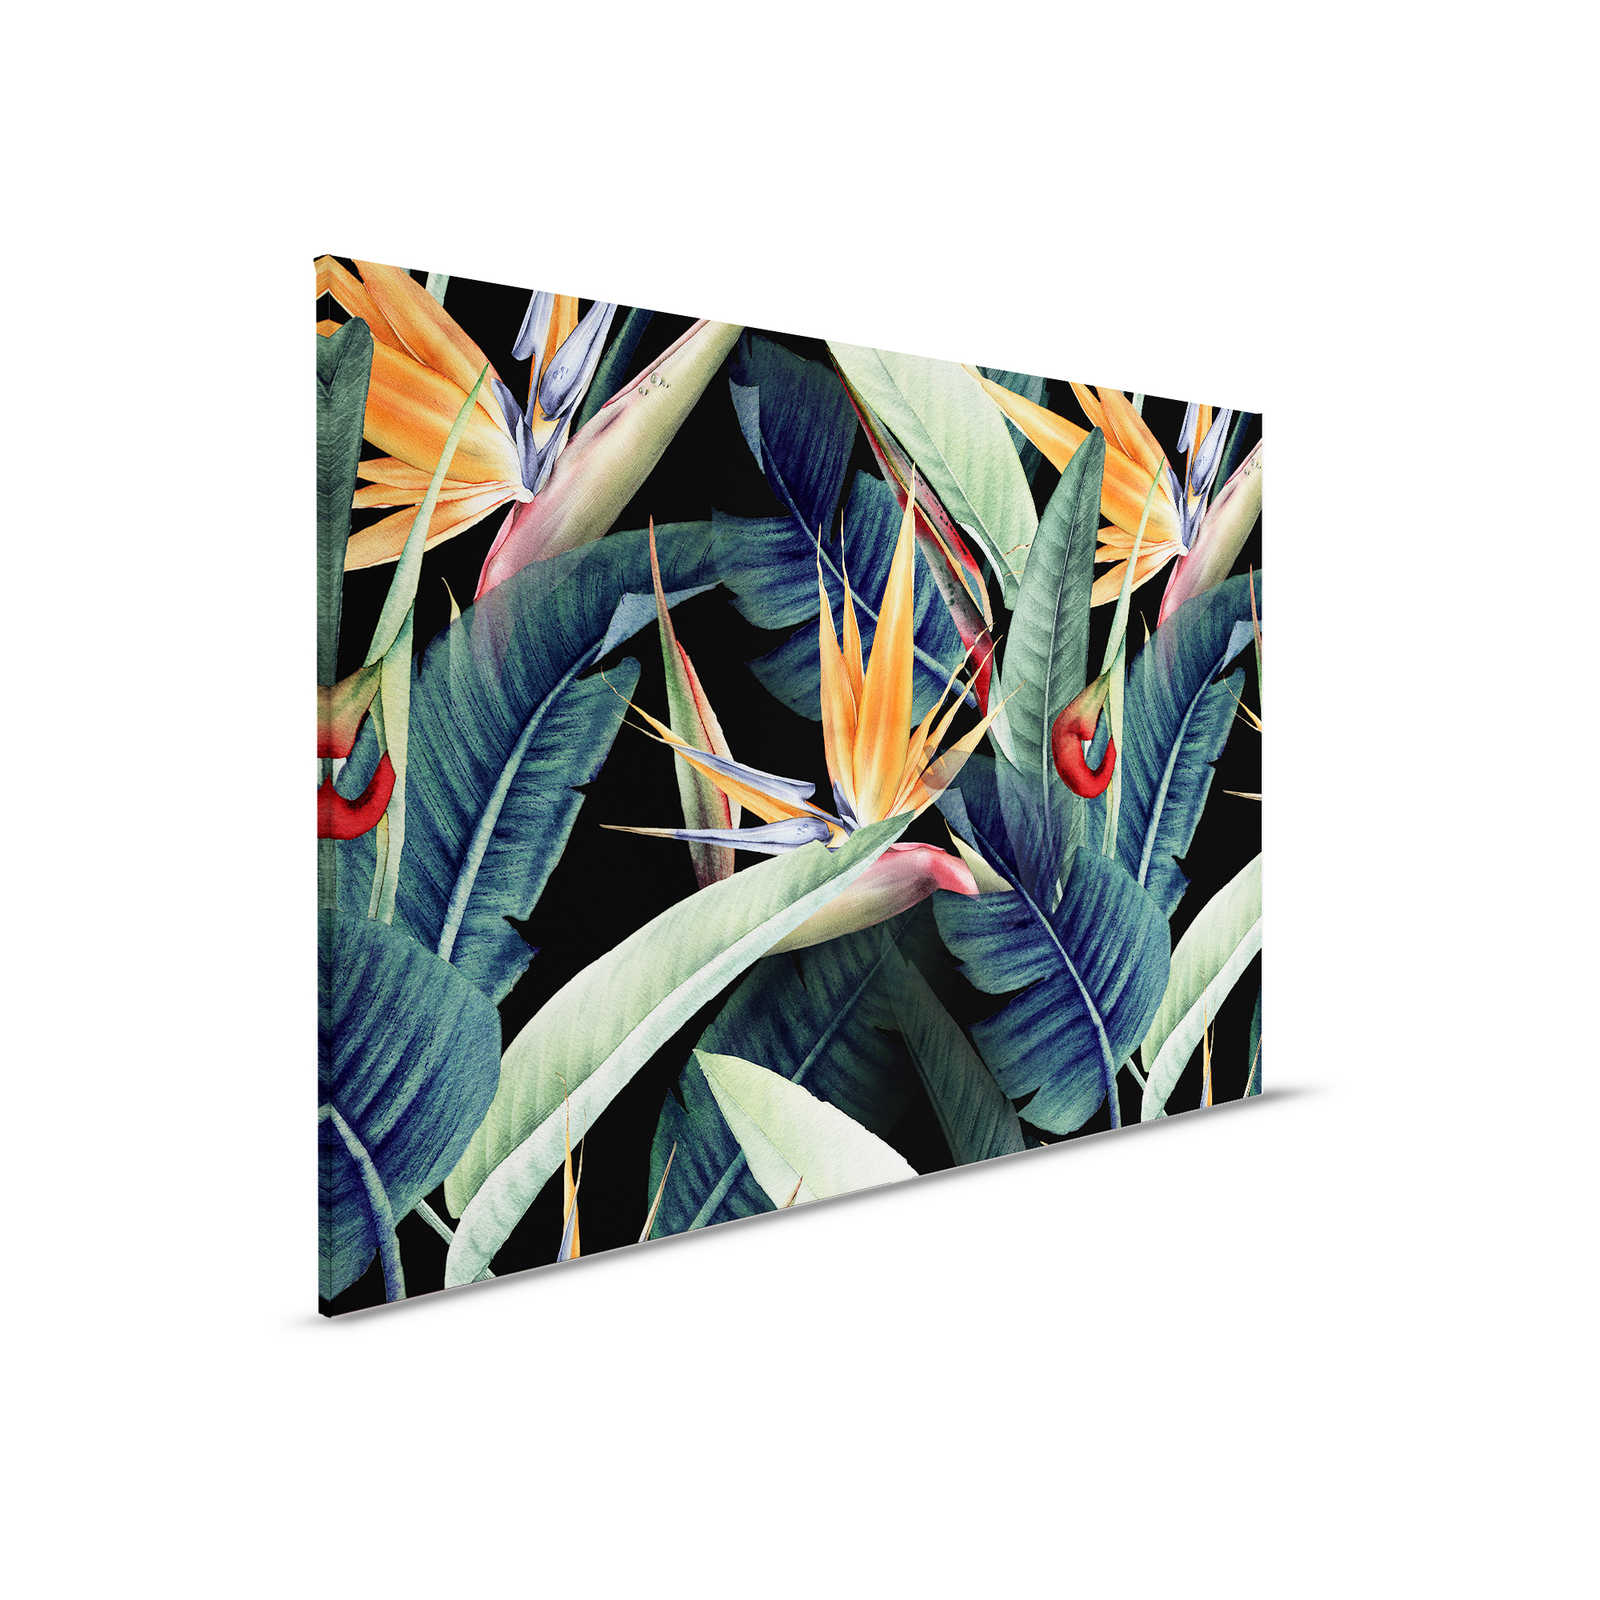 Toile motif jungle avec feuilles peintes - 0,90 m x 0,60 m
